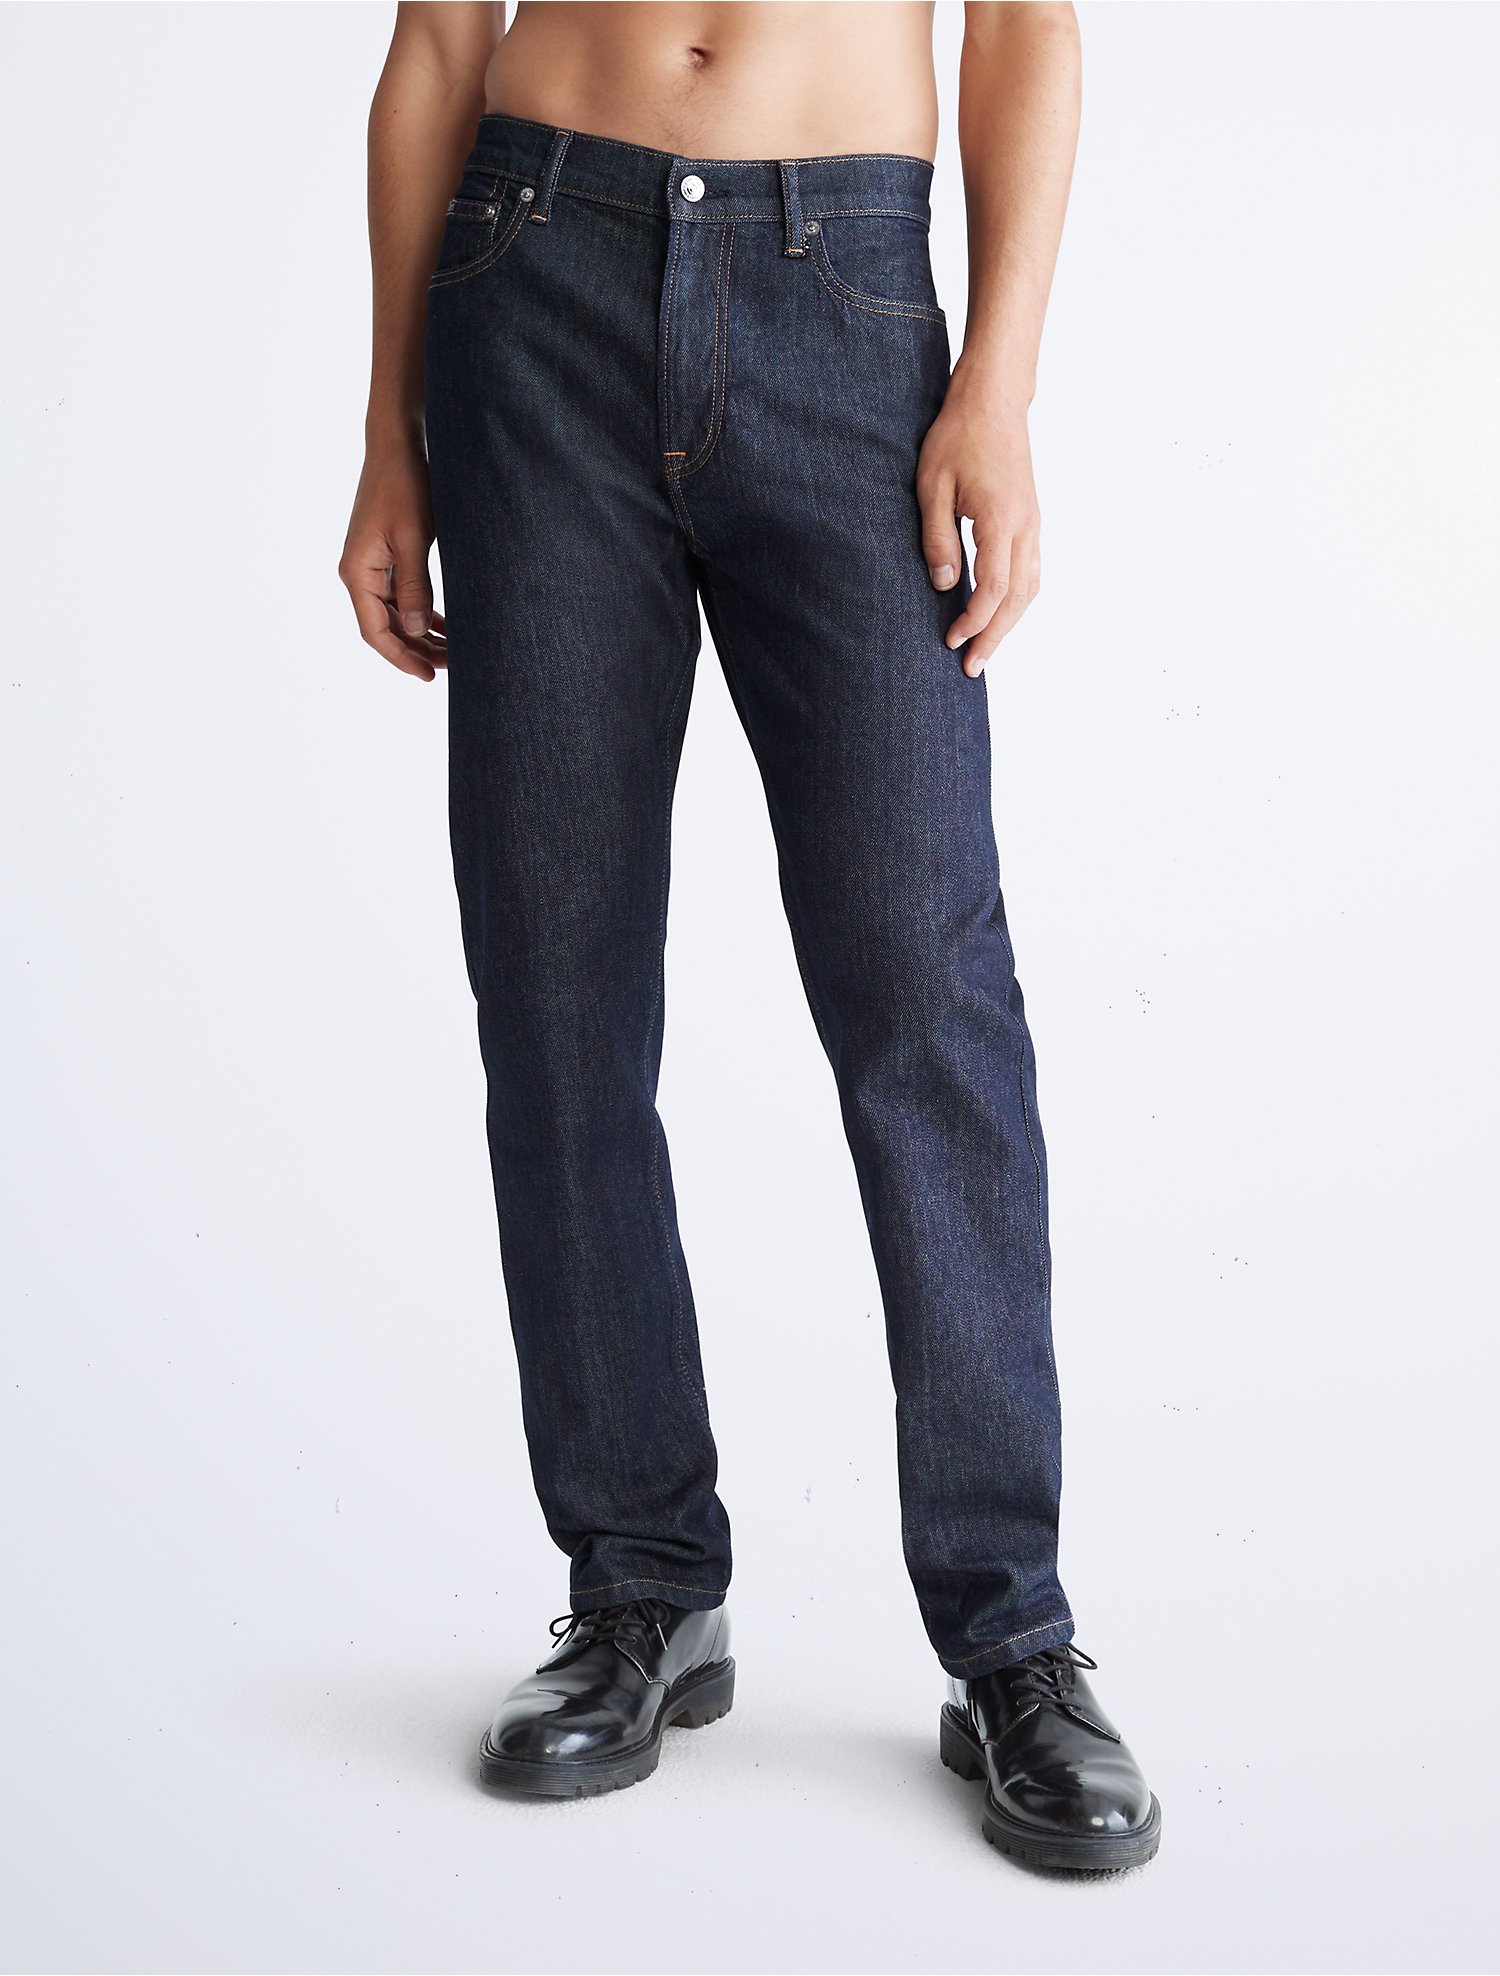 Descubrir 56+ imagen calvin klein jeans usa